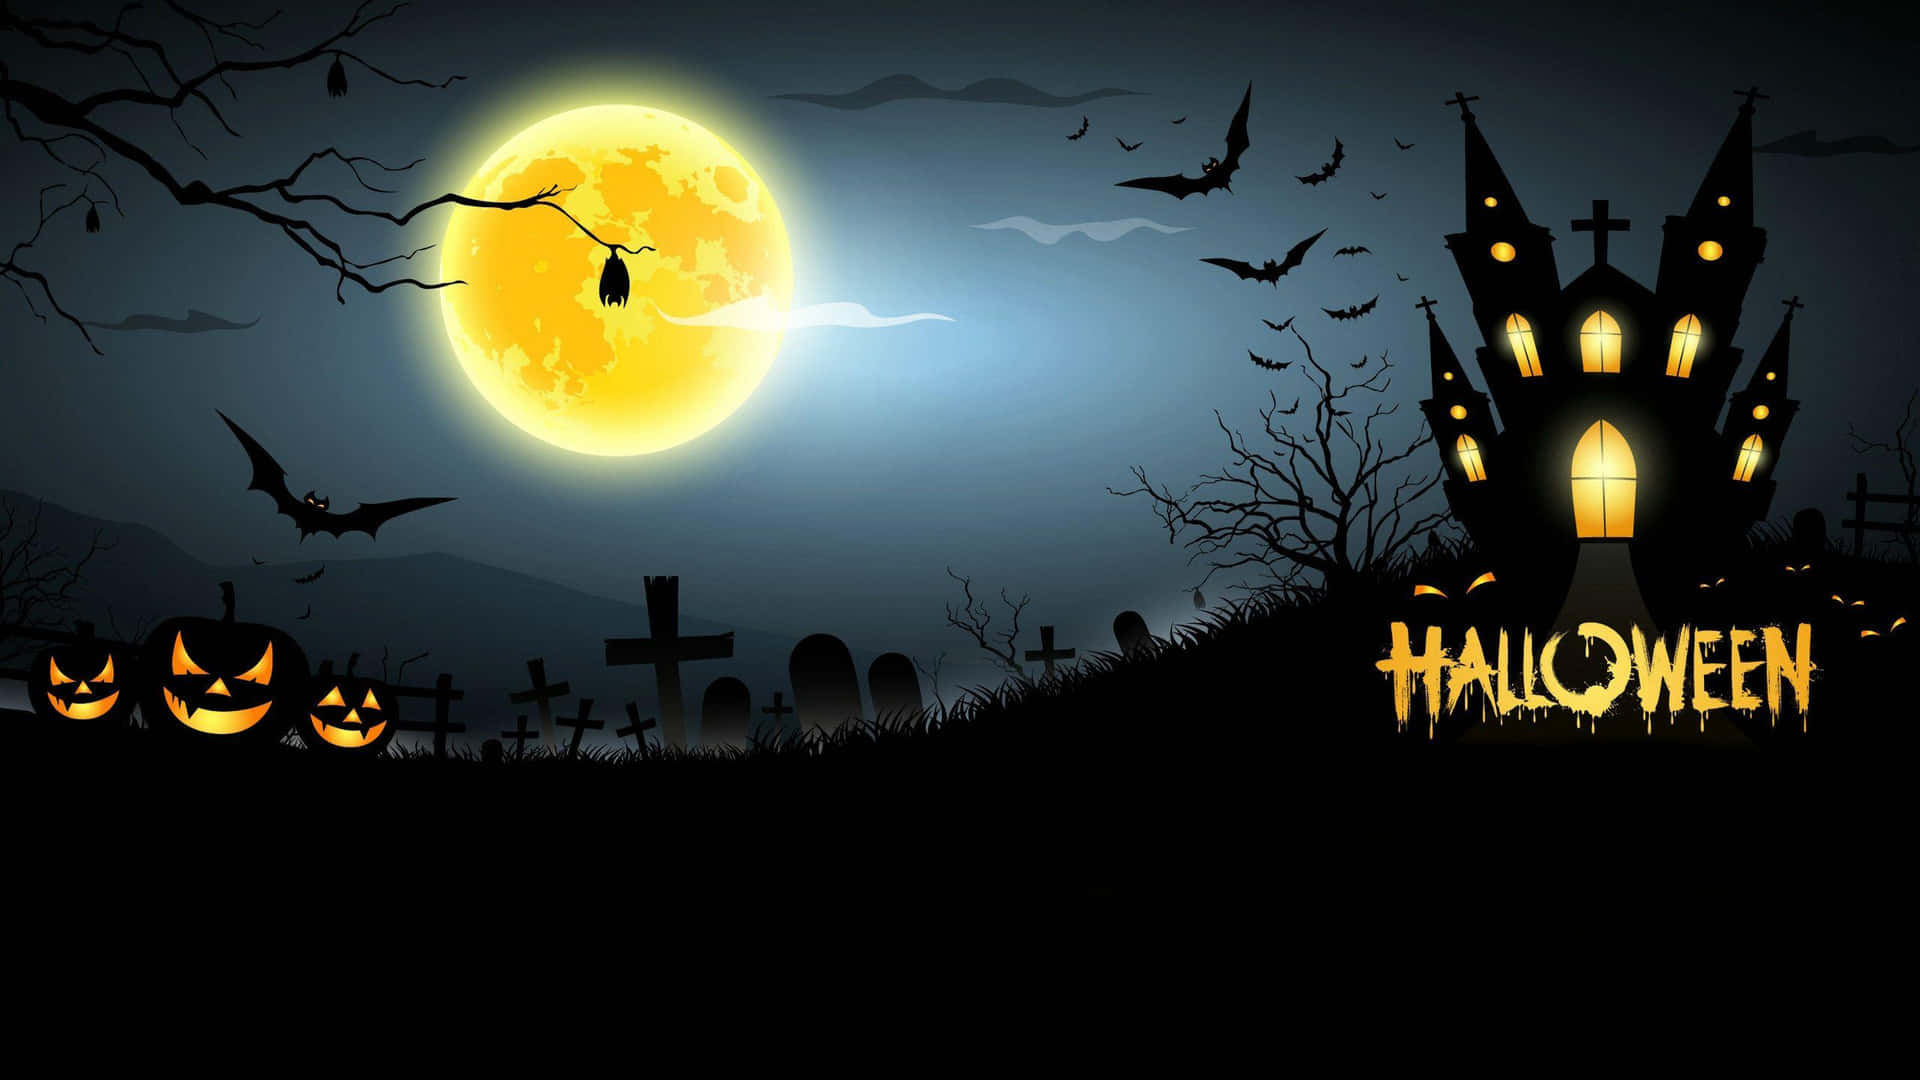 Imagende Una Casa Embrujada Y Una Luna Brillante De Halloween En Cartoon